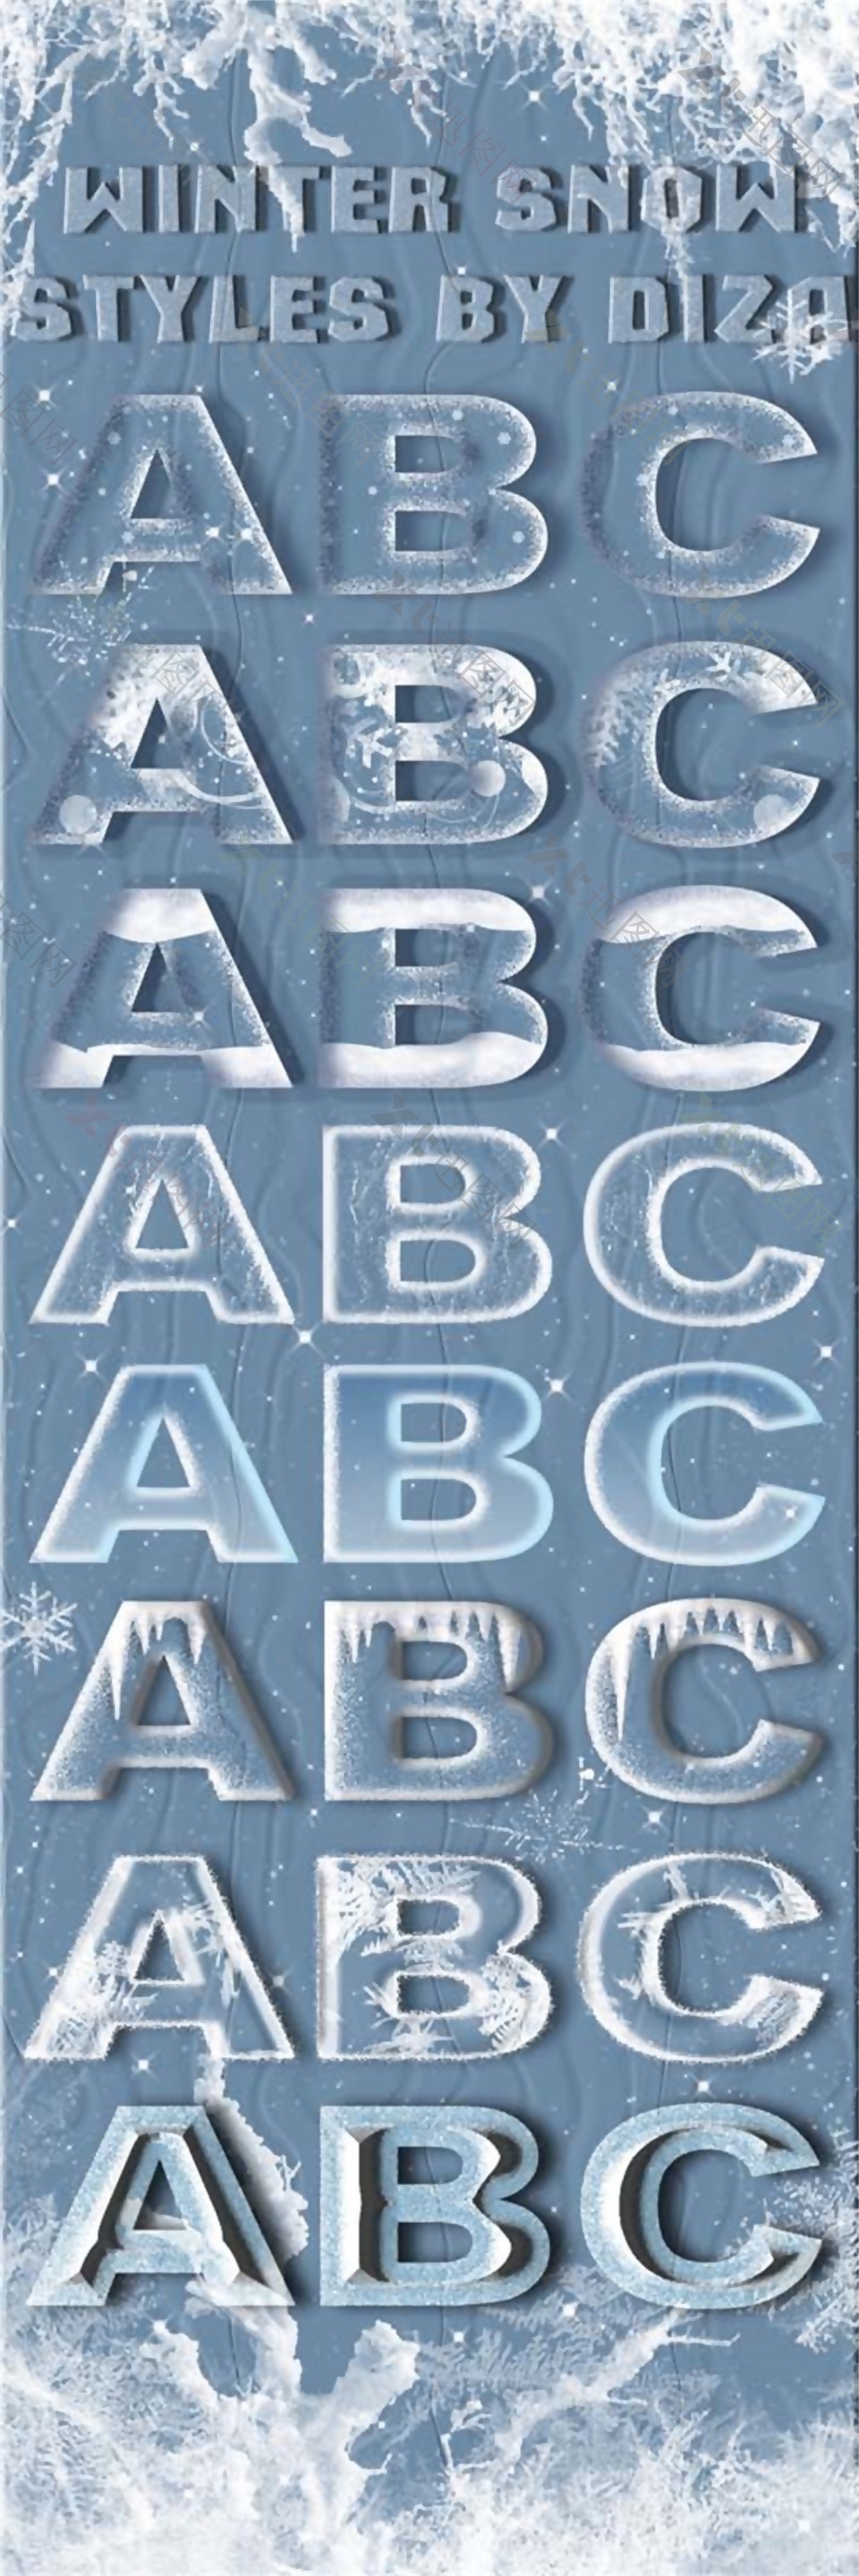 雪天下不同形态ABCpsd源文件